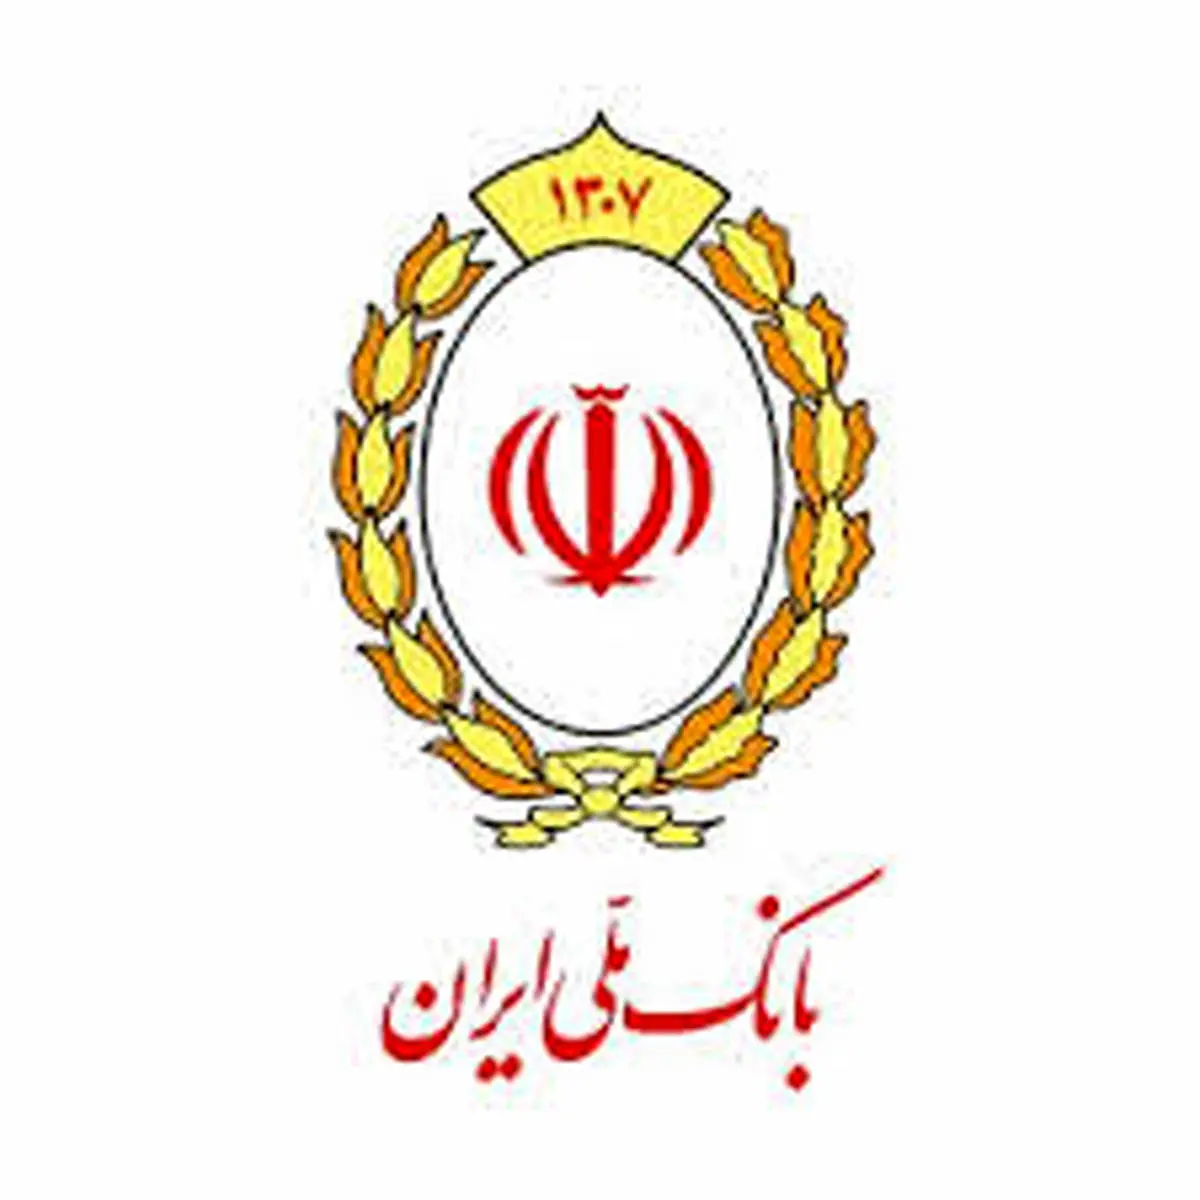 پرداخت 11 هزار و 600 میلیارد تومان تسهیلات کرونایی توسط بانک ملی ایران

